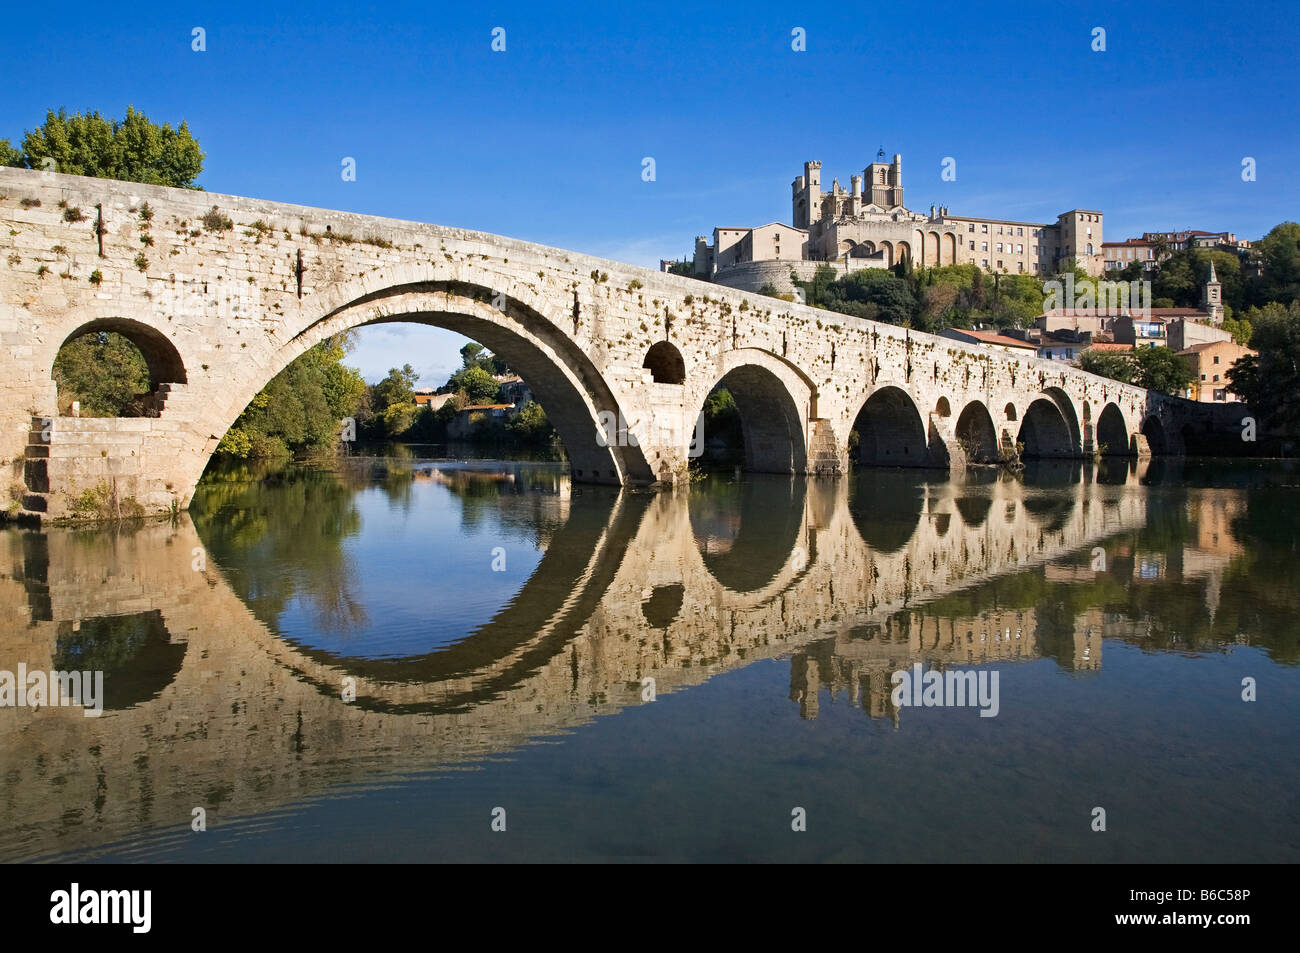 Cité médiévale Le Pont Vieux, pont en pierre traversant la rivière Orb. Cathédrale Saint-Nazaire de style gothique du 14ème siècle derrière, Bézier, Languedoc-Roussillon, France Banque D'Images